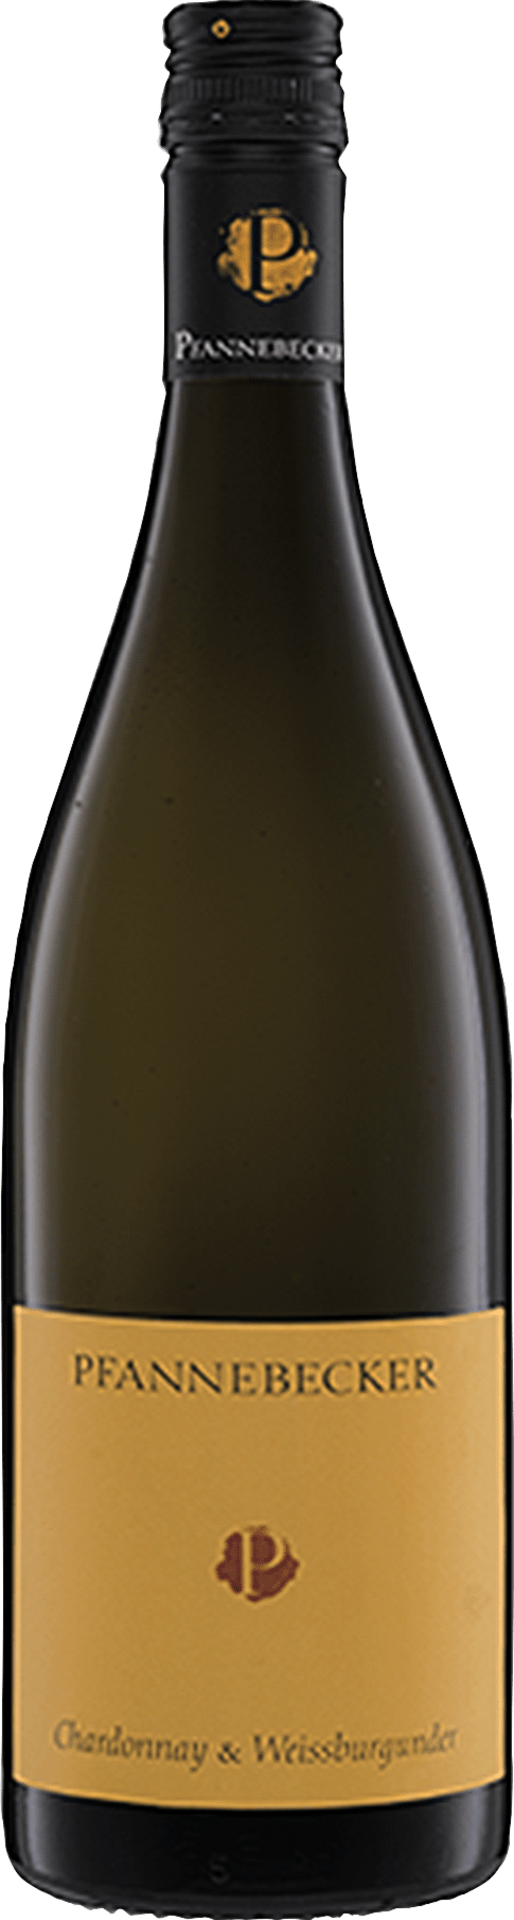 Chardonnay & Weissburgunder QbA trocken